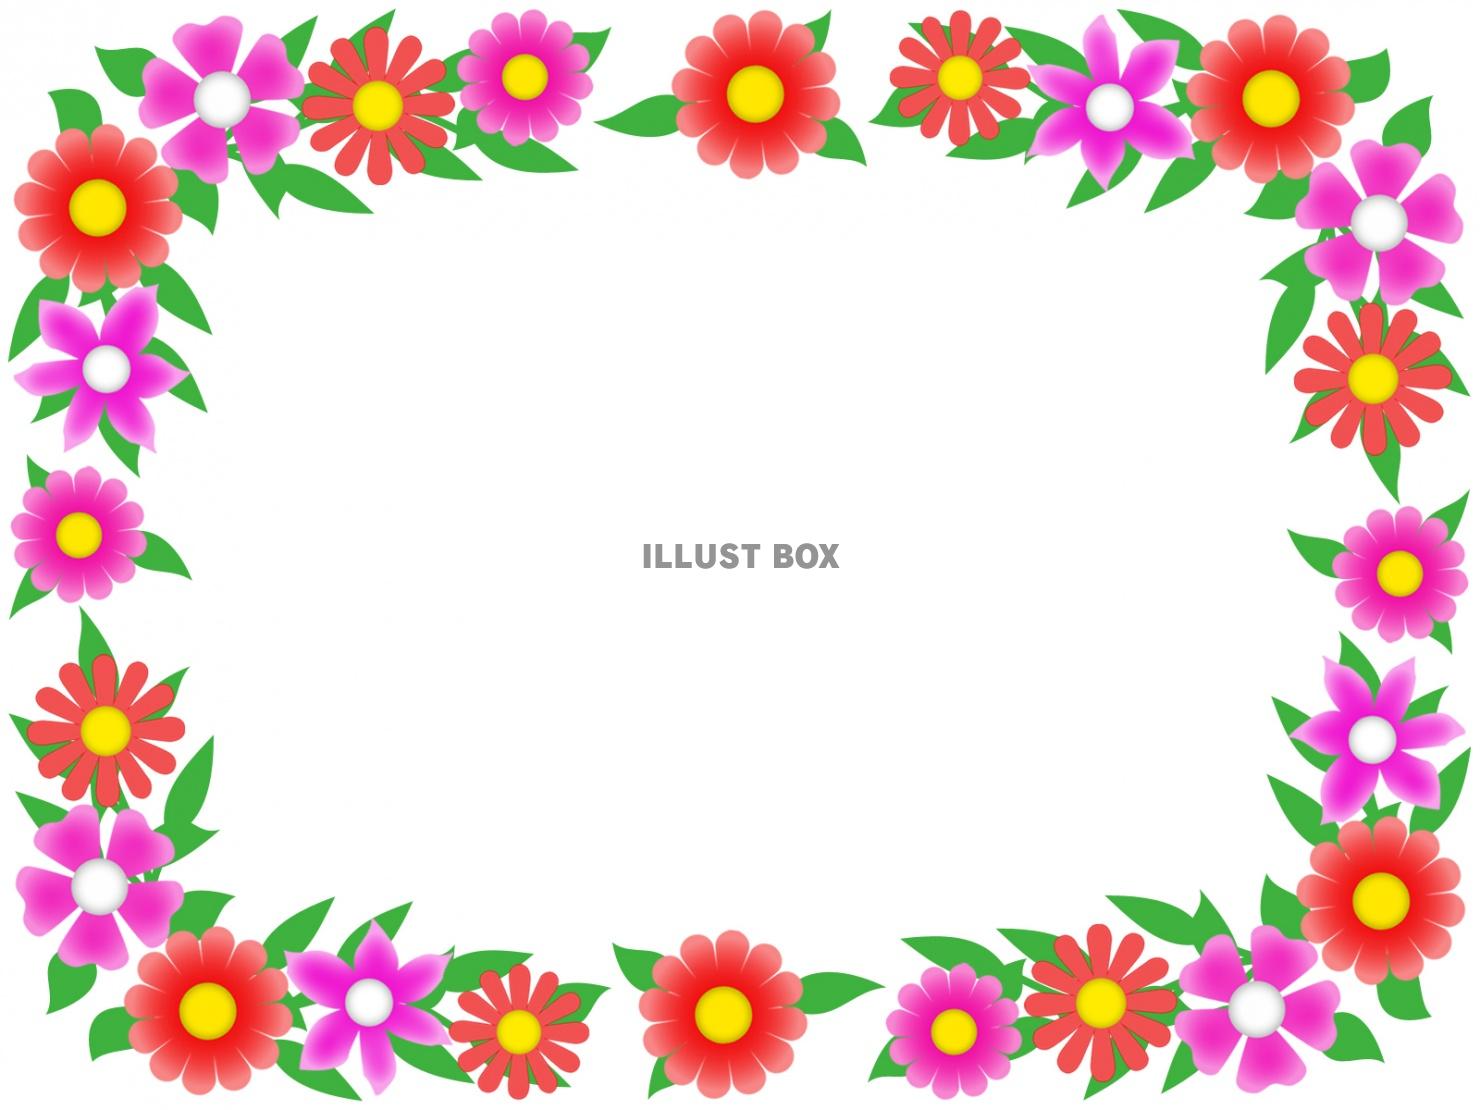 お花模様のフレーム素材シンプル飾り枠背景イラスト